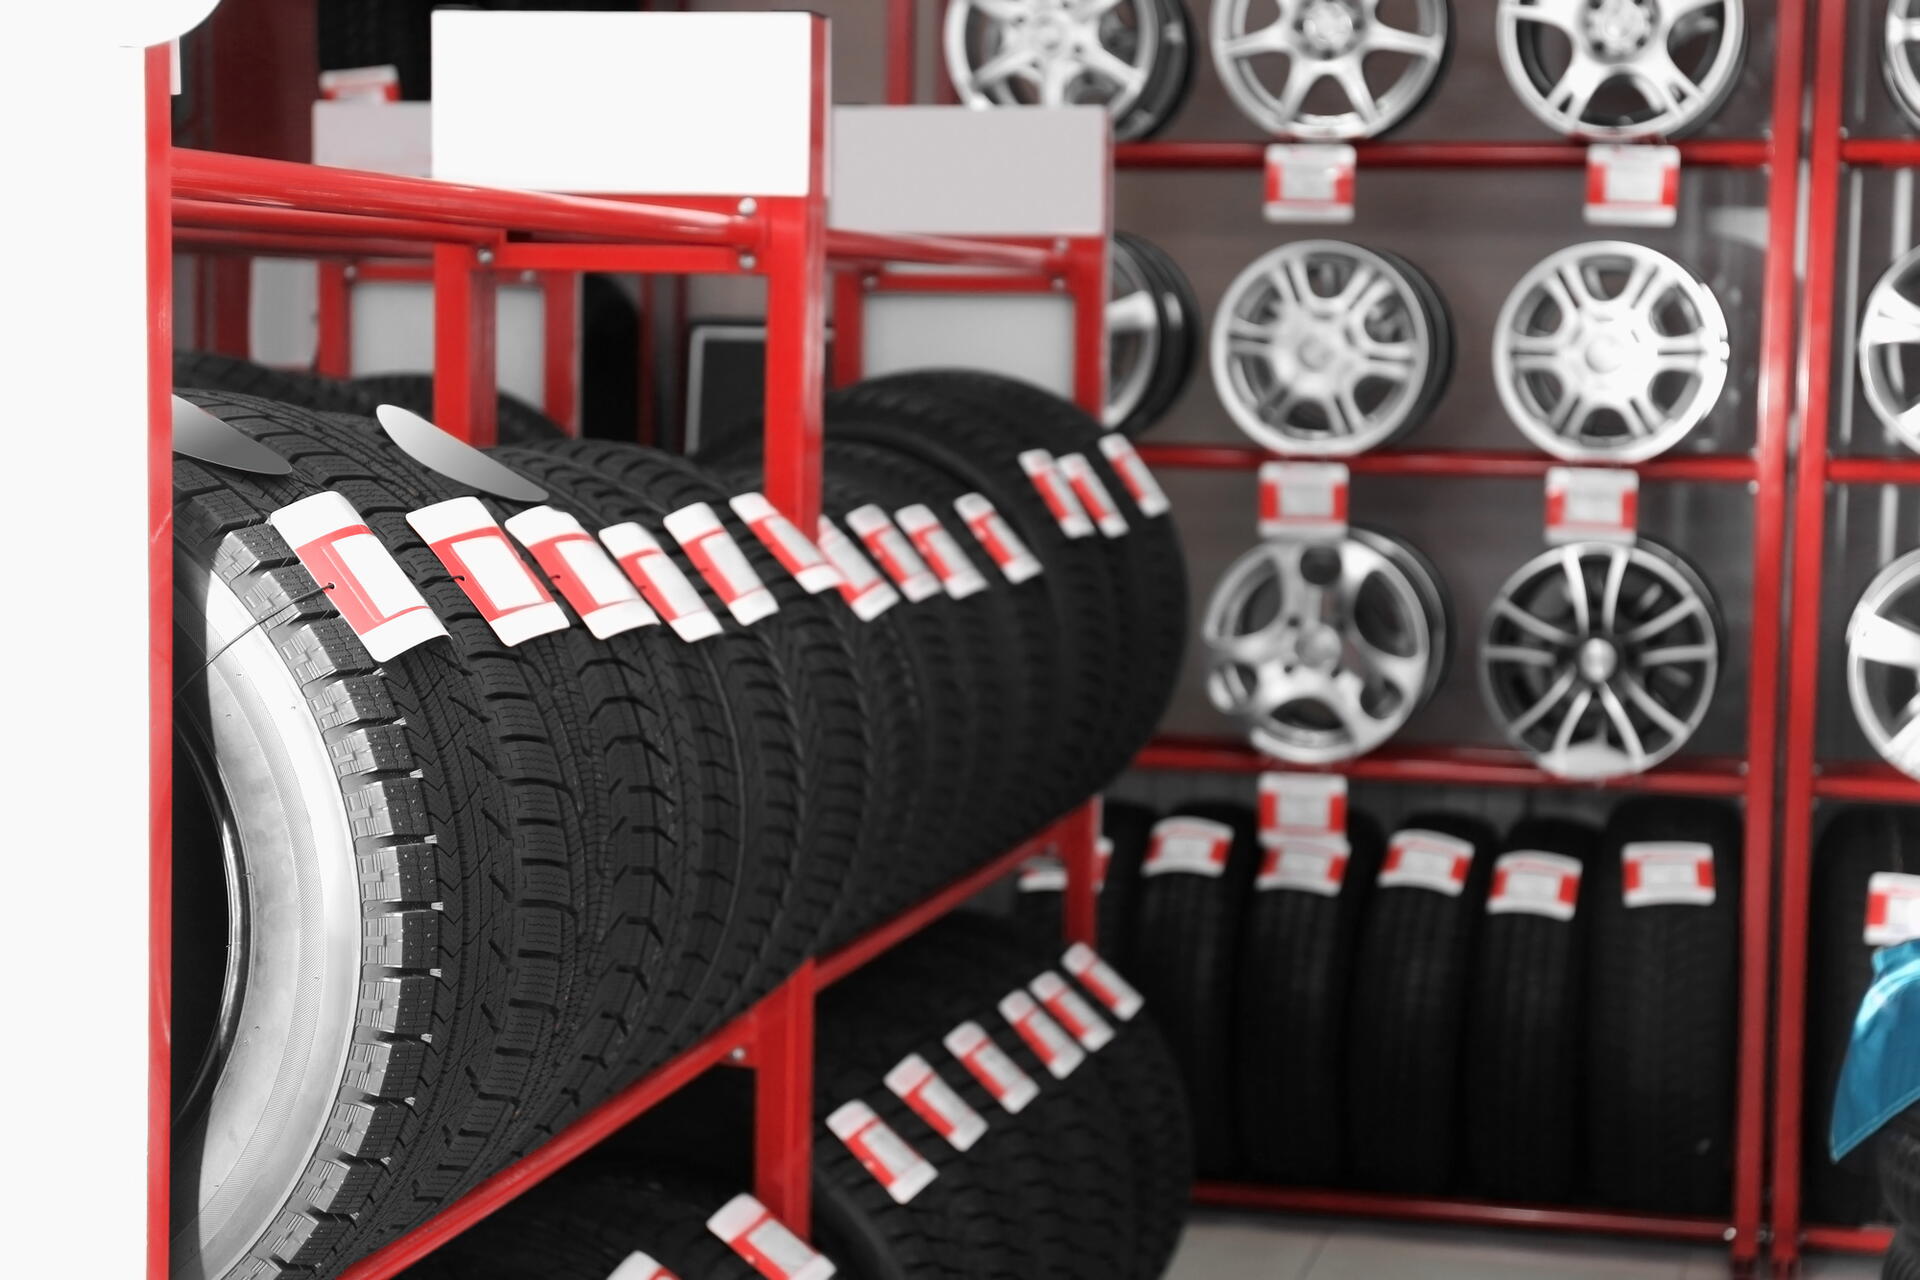 Poradíme s výběrem nových pneumatik a přidáme i praktické rady a tipy